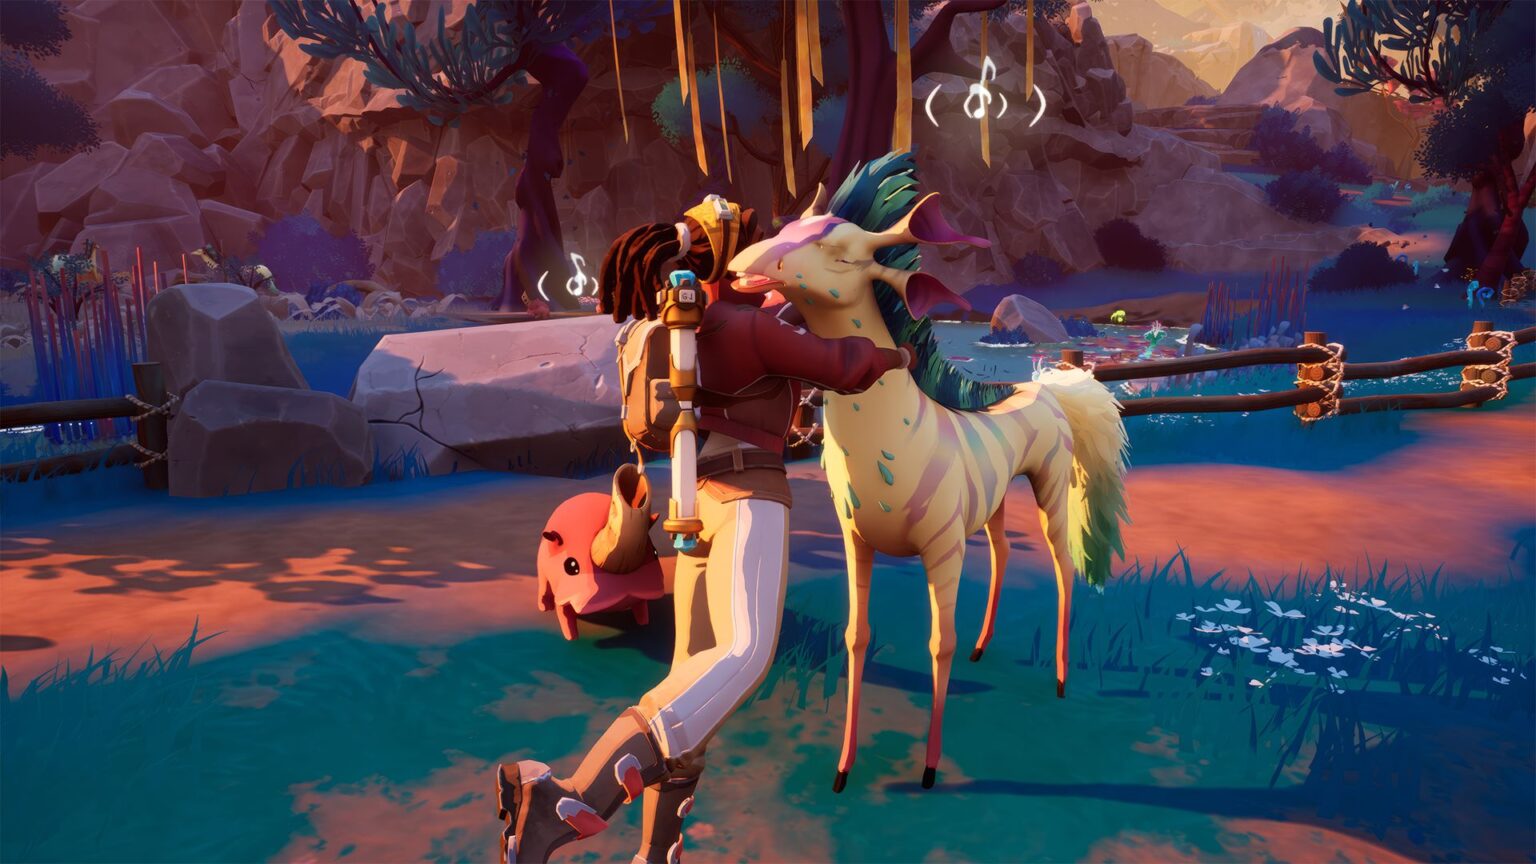 La protagonista abbraccia un unicorno